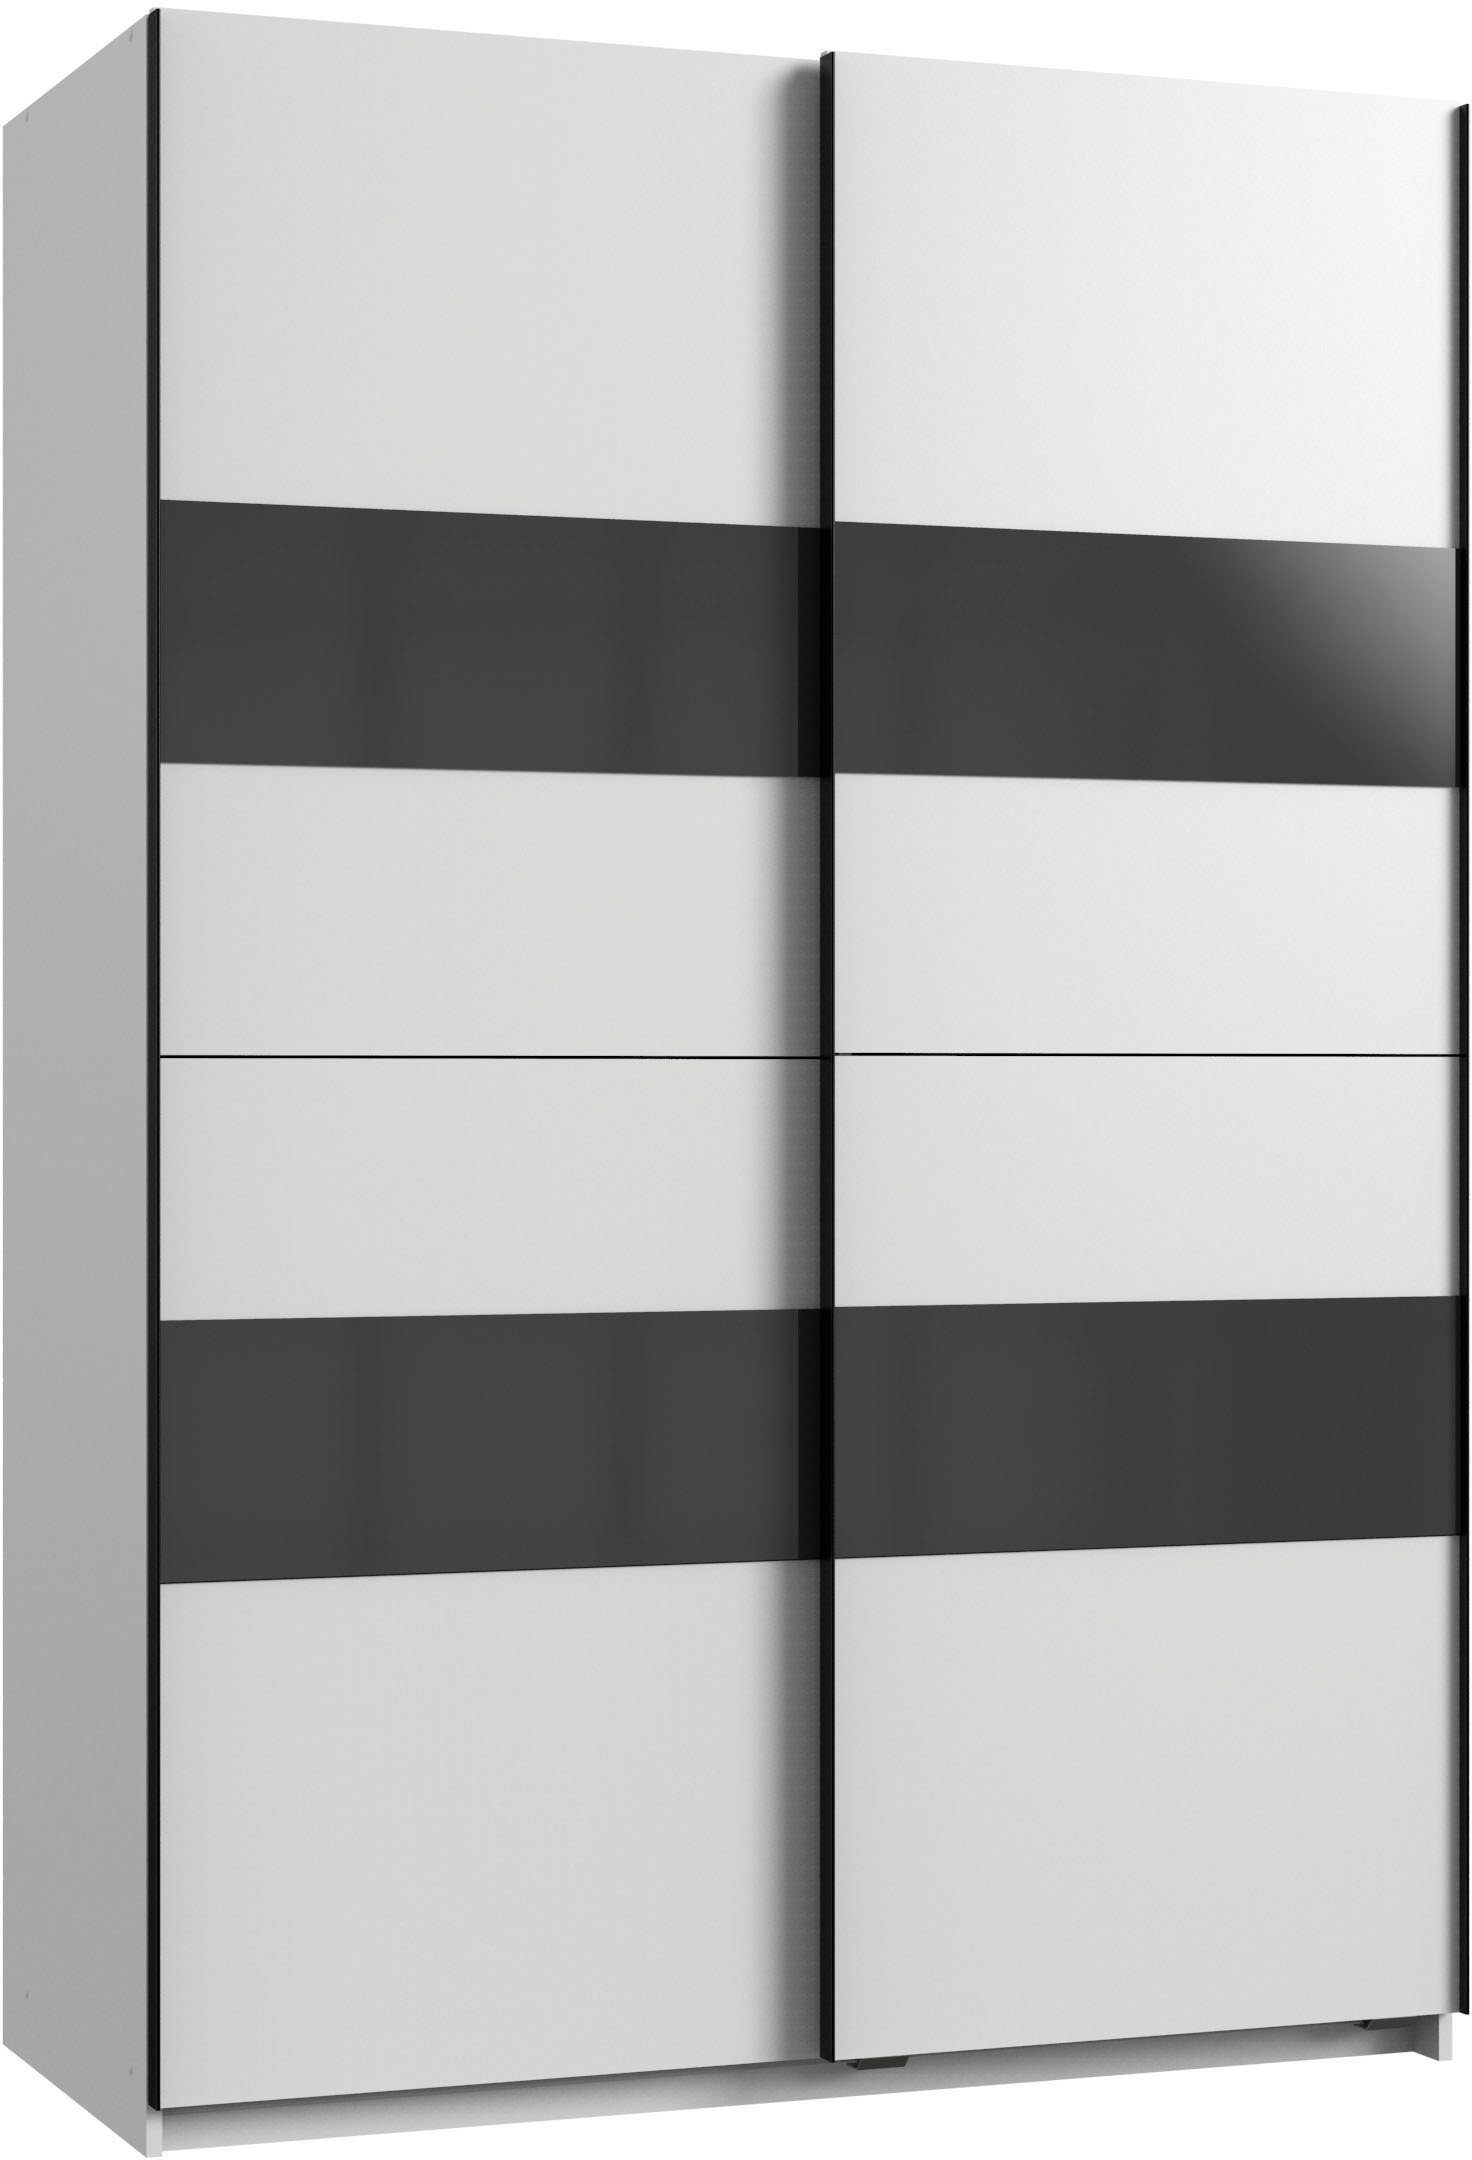 Wimex Schwebetürenschrank Altona mit weiß Einlegeböden zusätzlichen weiß/Grauglas und Glaselementen 